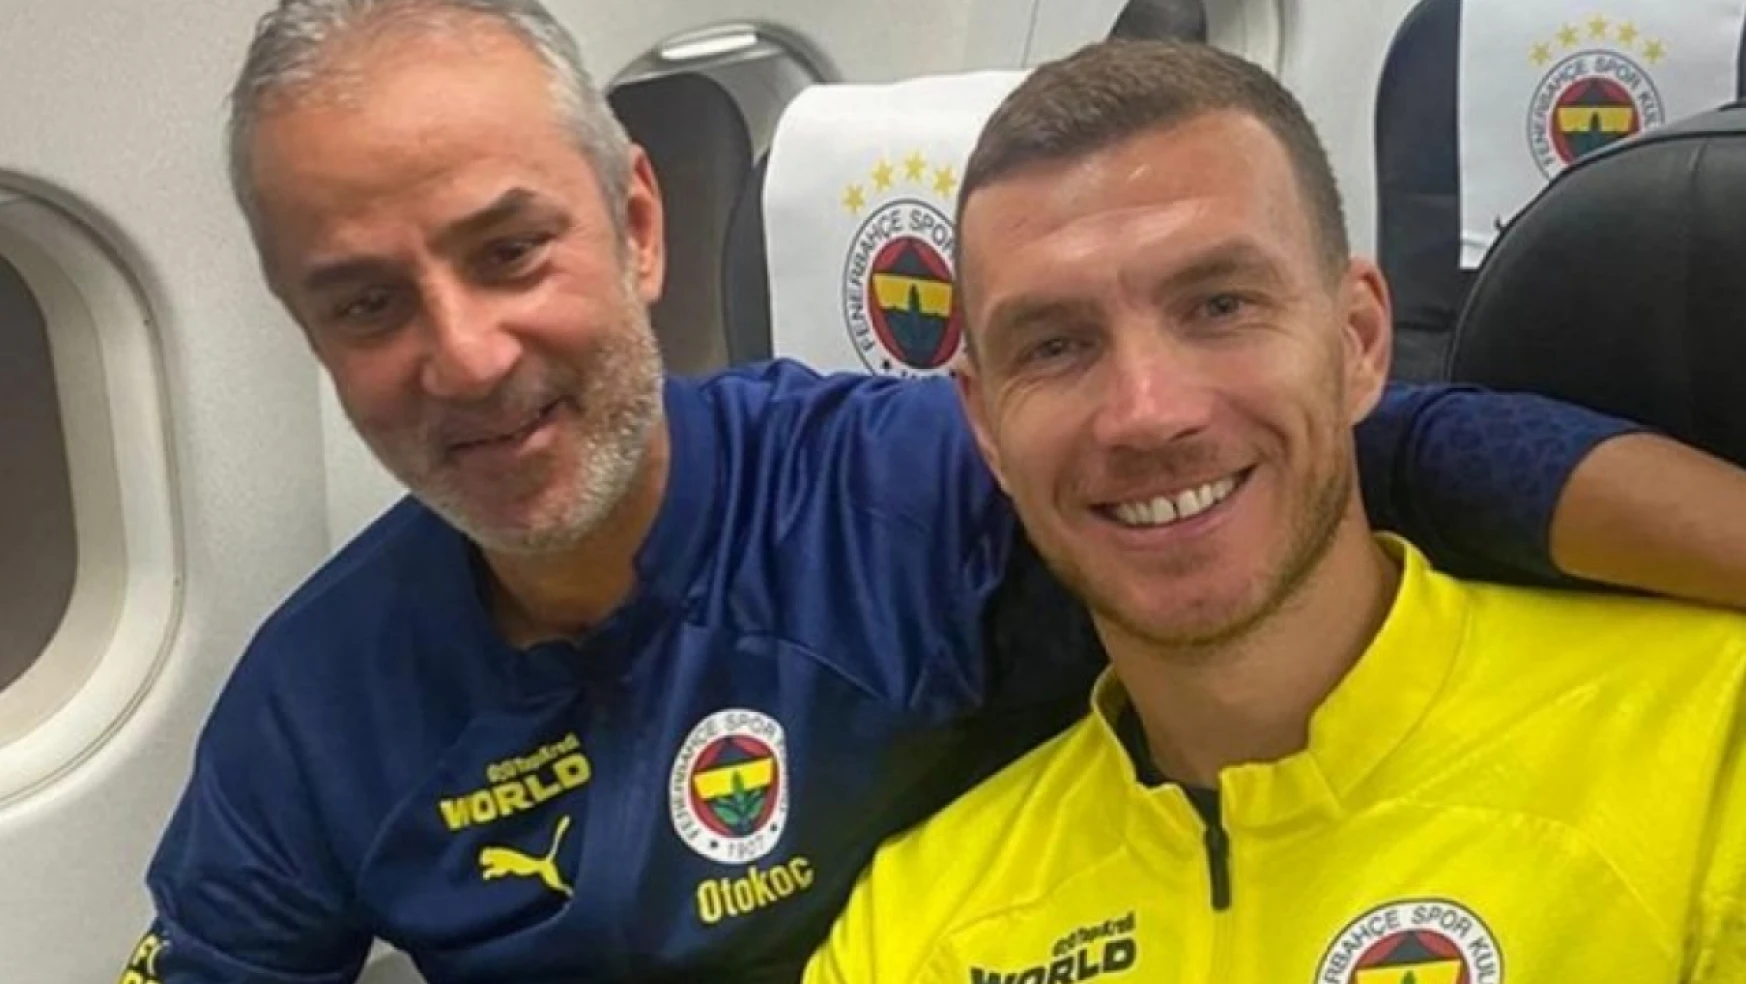 Fenerbahçe, Teknik Direktör İsmail Kartal ile Edin Dzeko arasında sorun yaşandığına dair çıkan haberlerin gerçeği yansıtmadığını açıkladı.